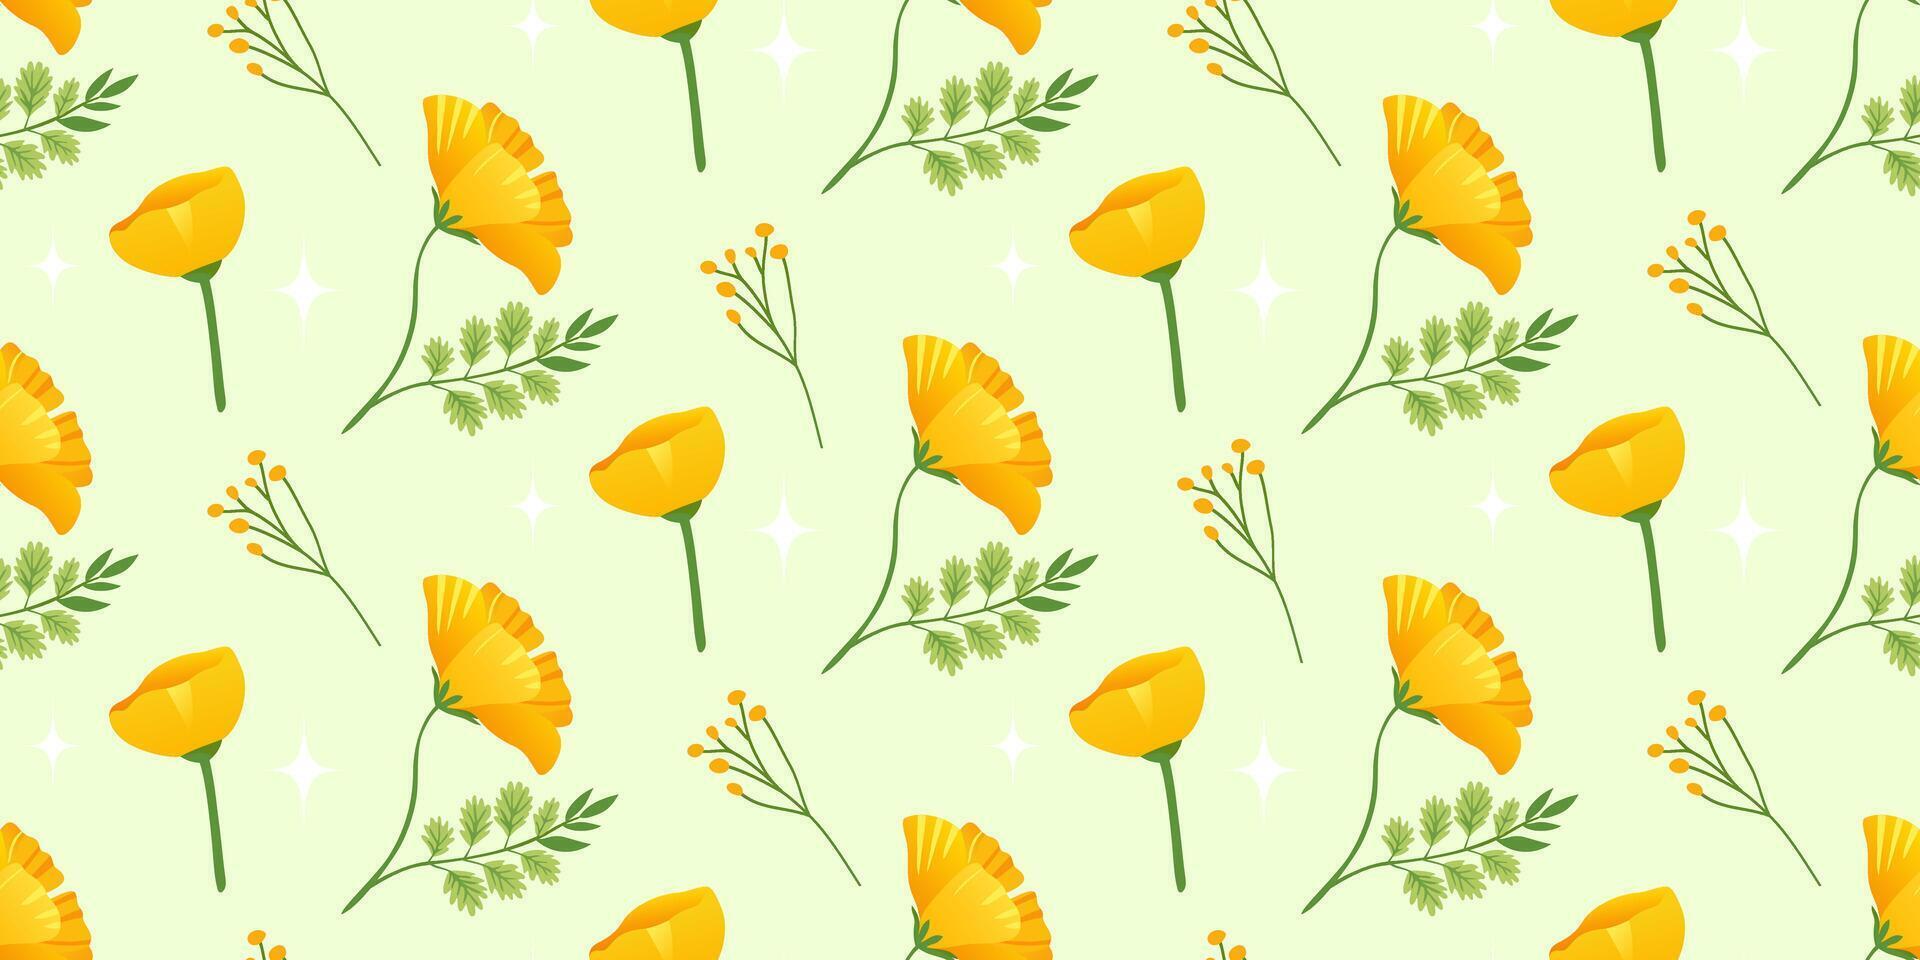 horizontal Hintergrund mit Gelb Blumen. nahtlos Blumen- Muster. Gelb Blumen von echscholtzia. Kalifornien golden Mohn. Vektor Illustration.